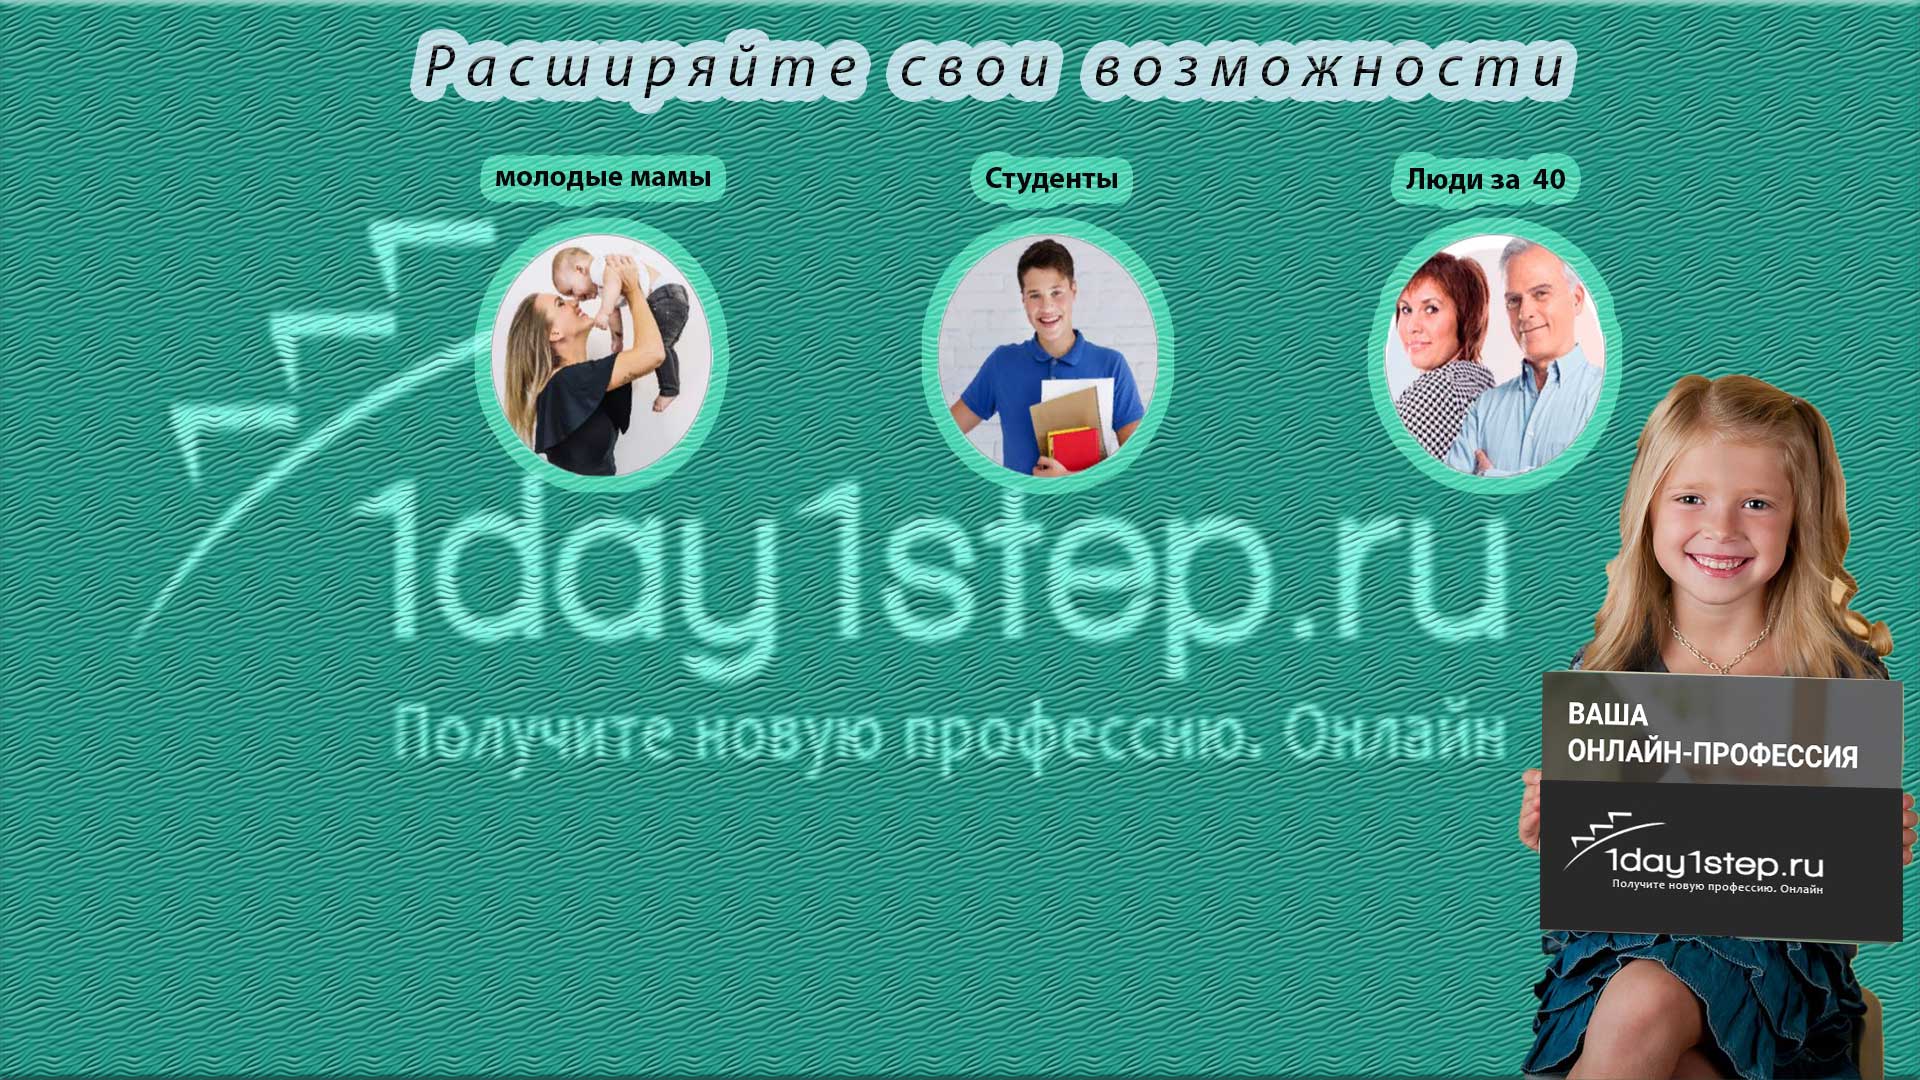 Онлайн школа Натальи Одеговой 1day1step, выбери онлайн специальность по своему вкусу и желанию с получением сертификата